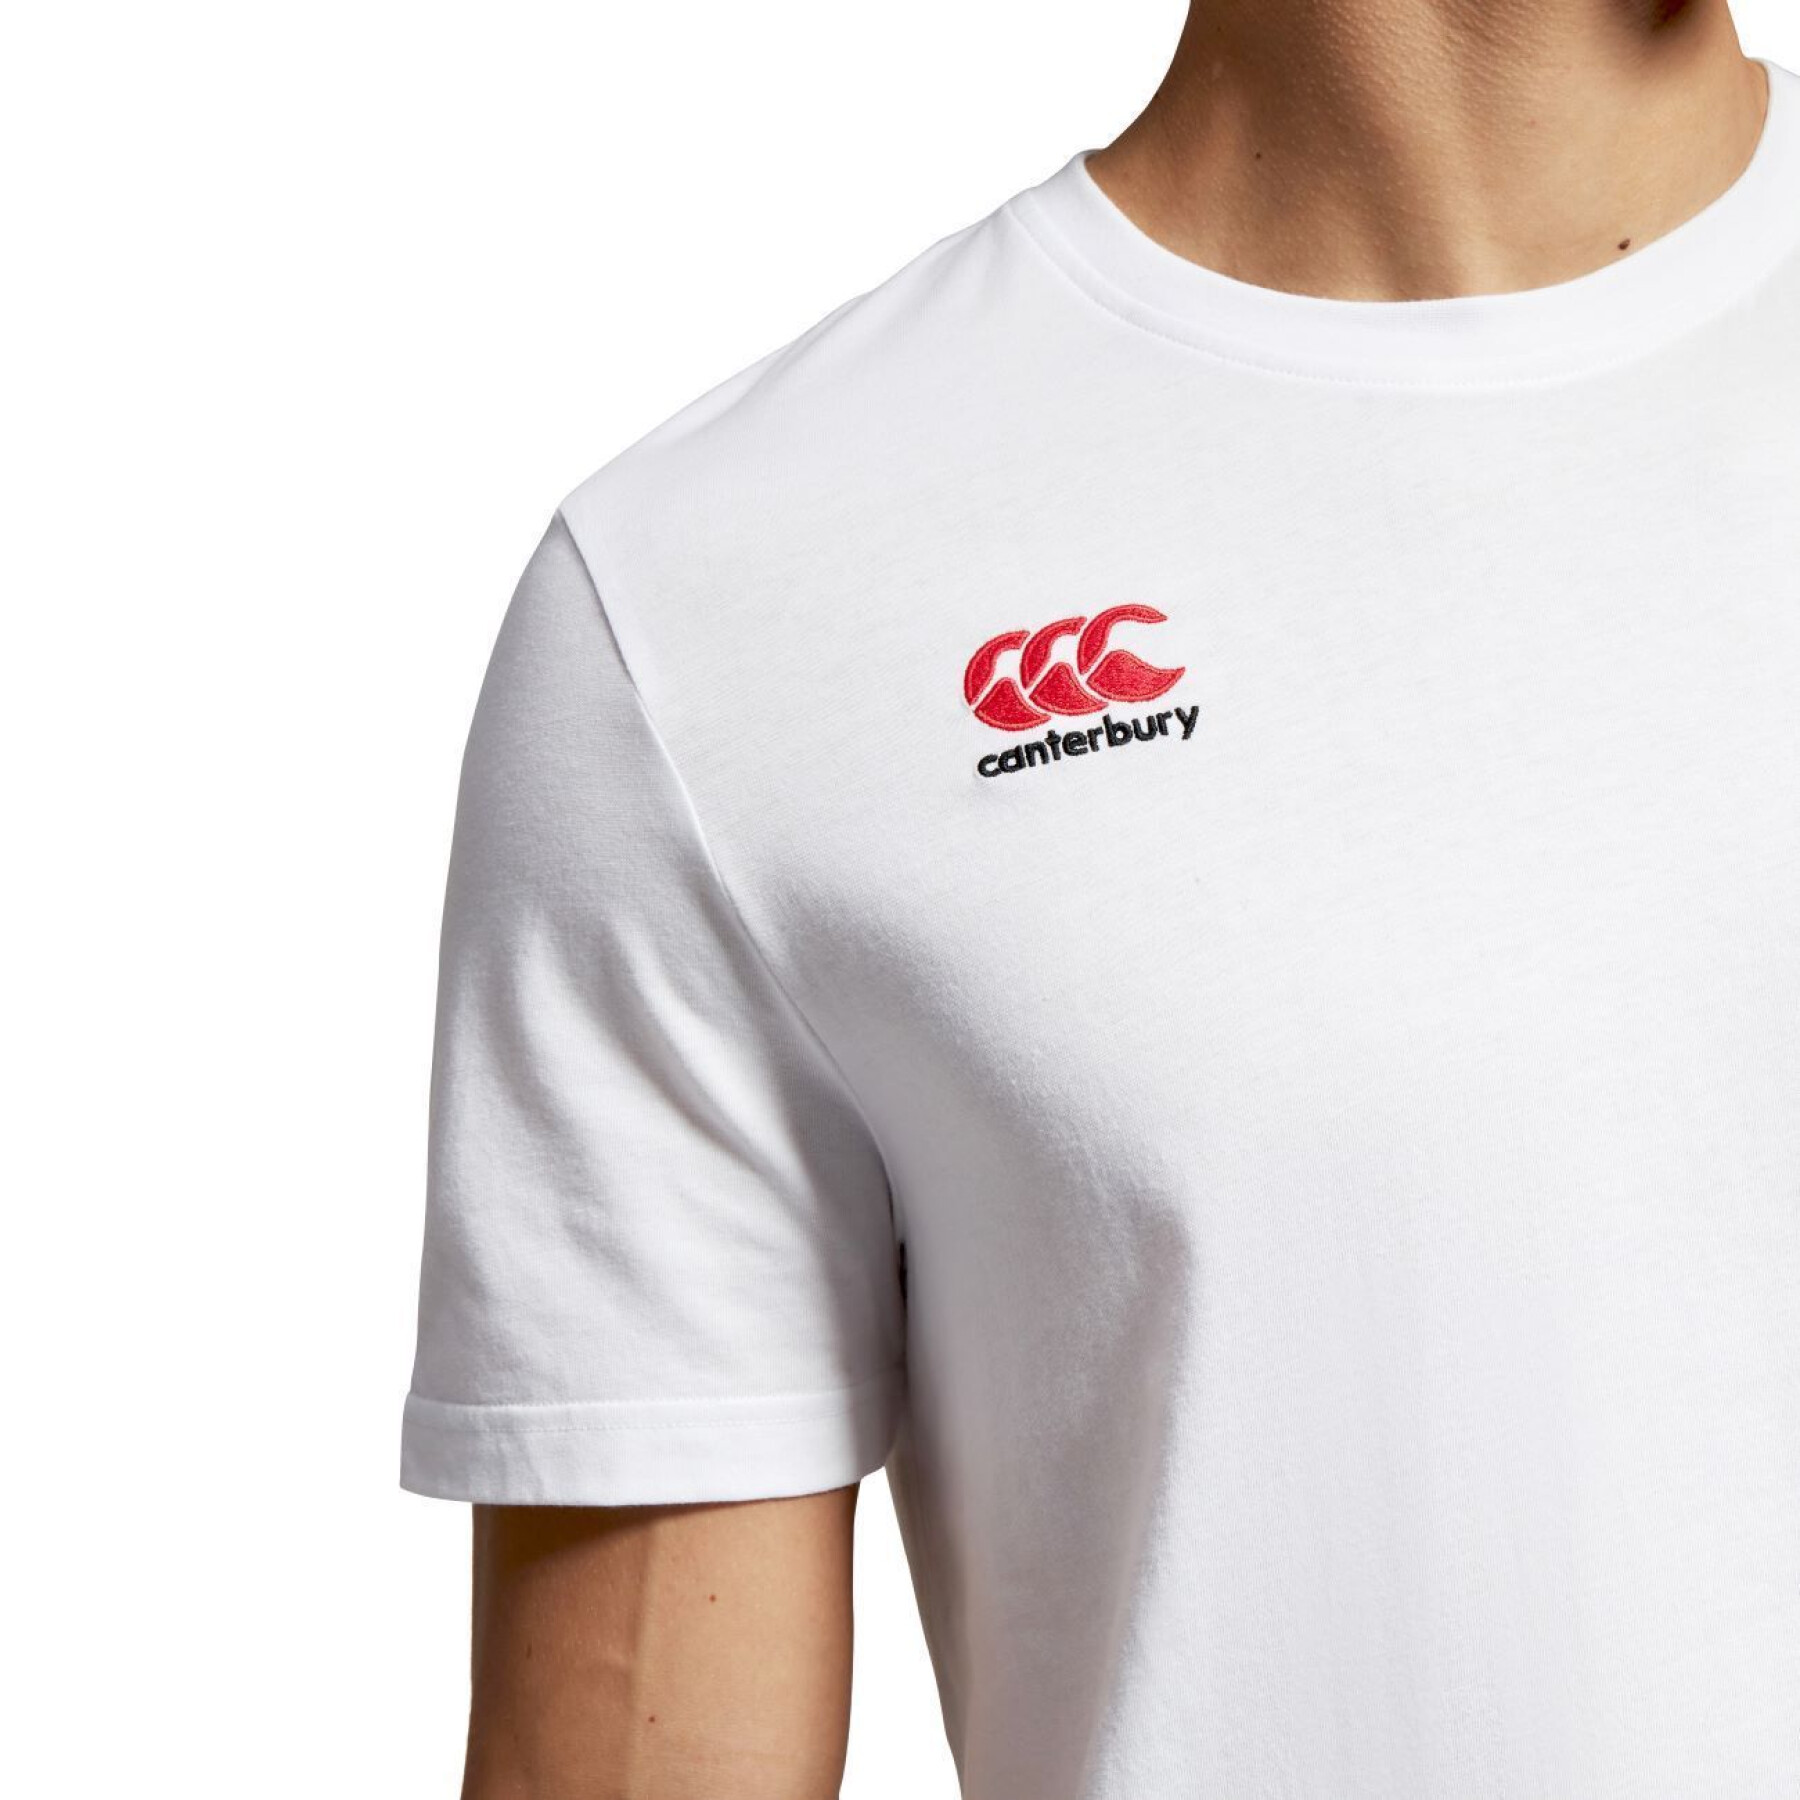 Katoenen T-shirt met klein logo Canterbury